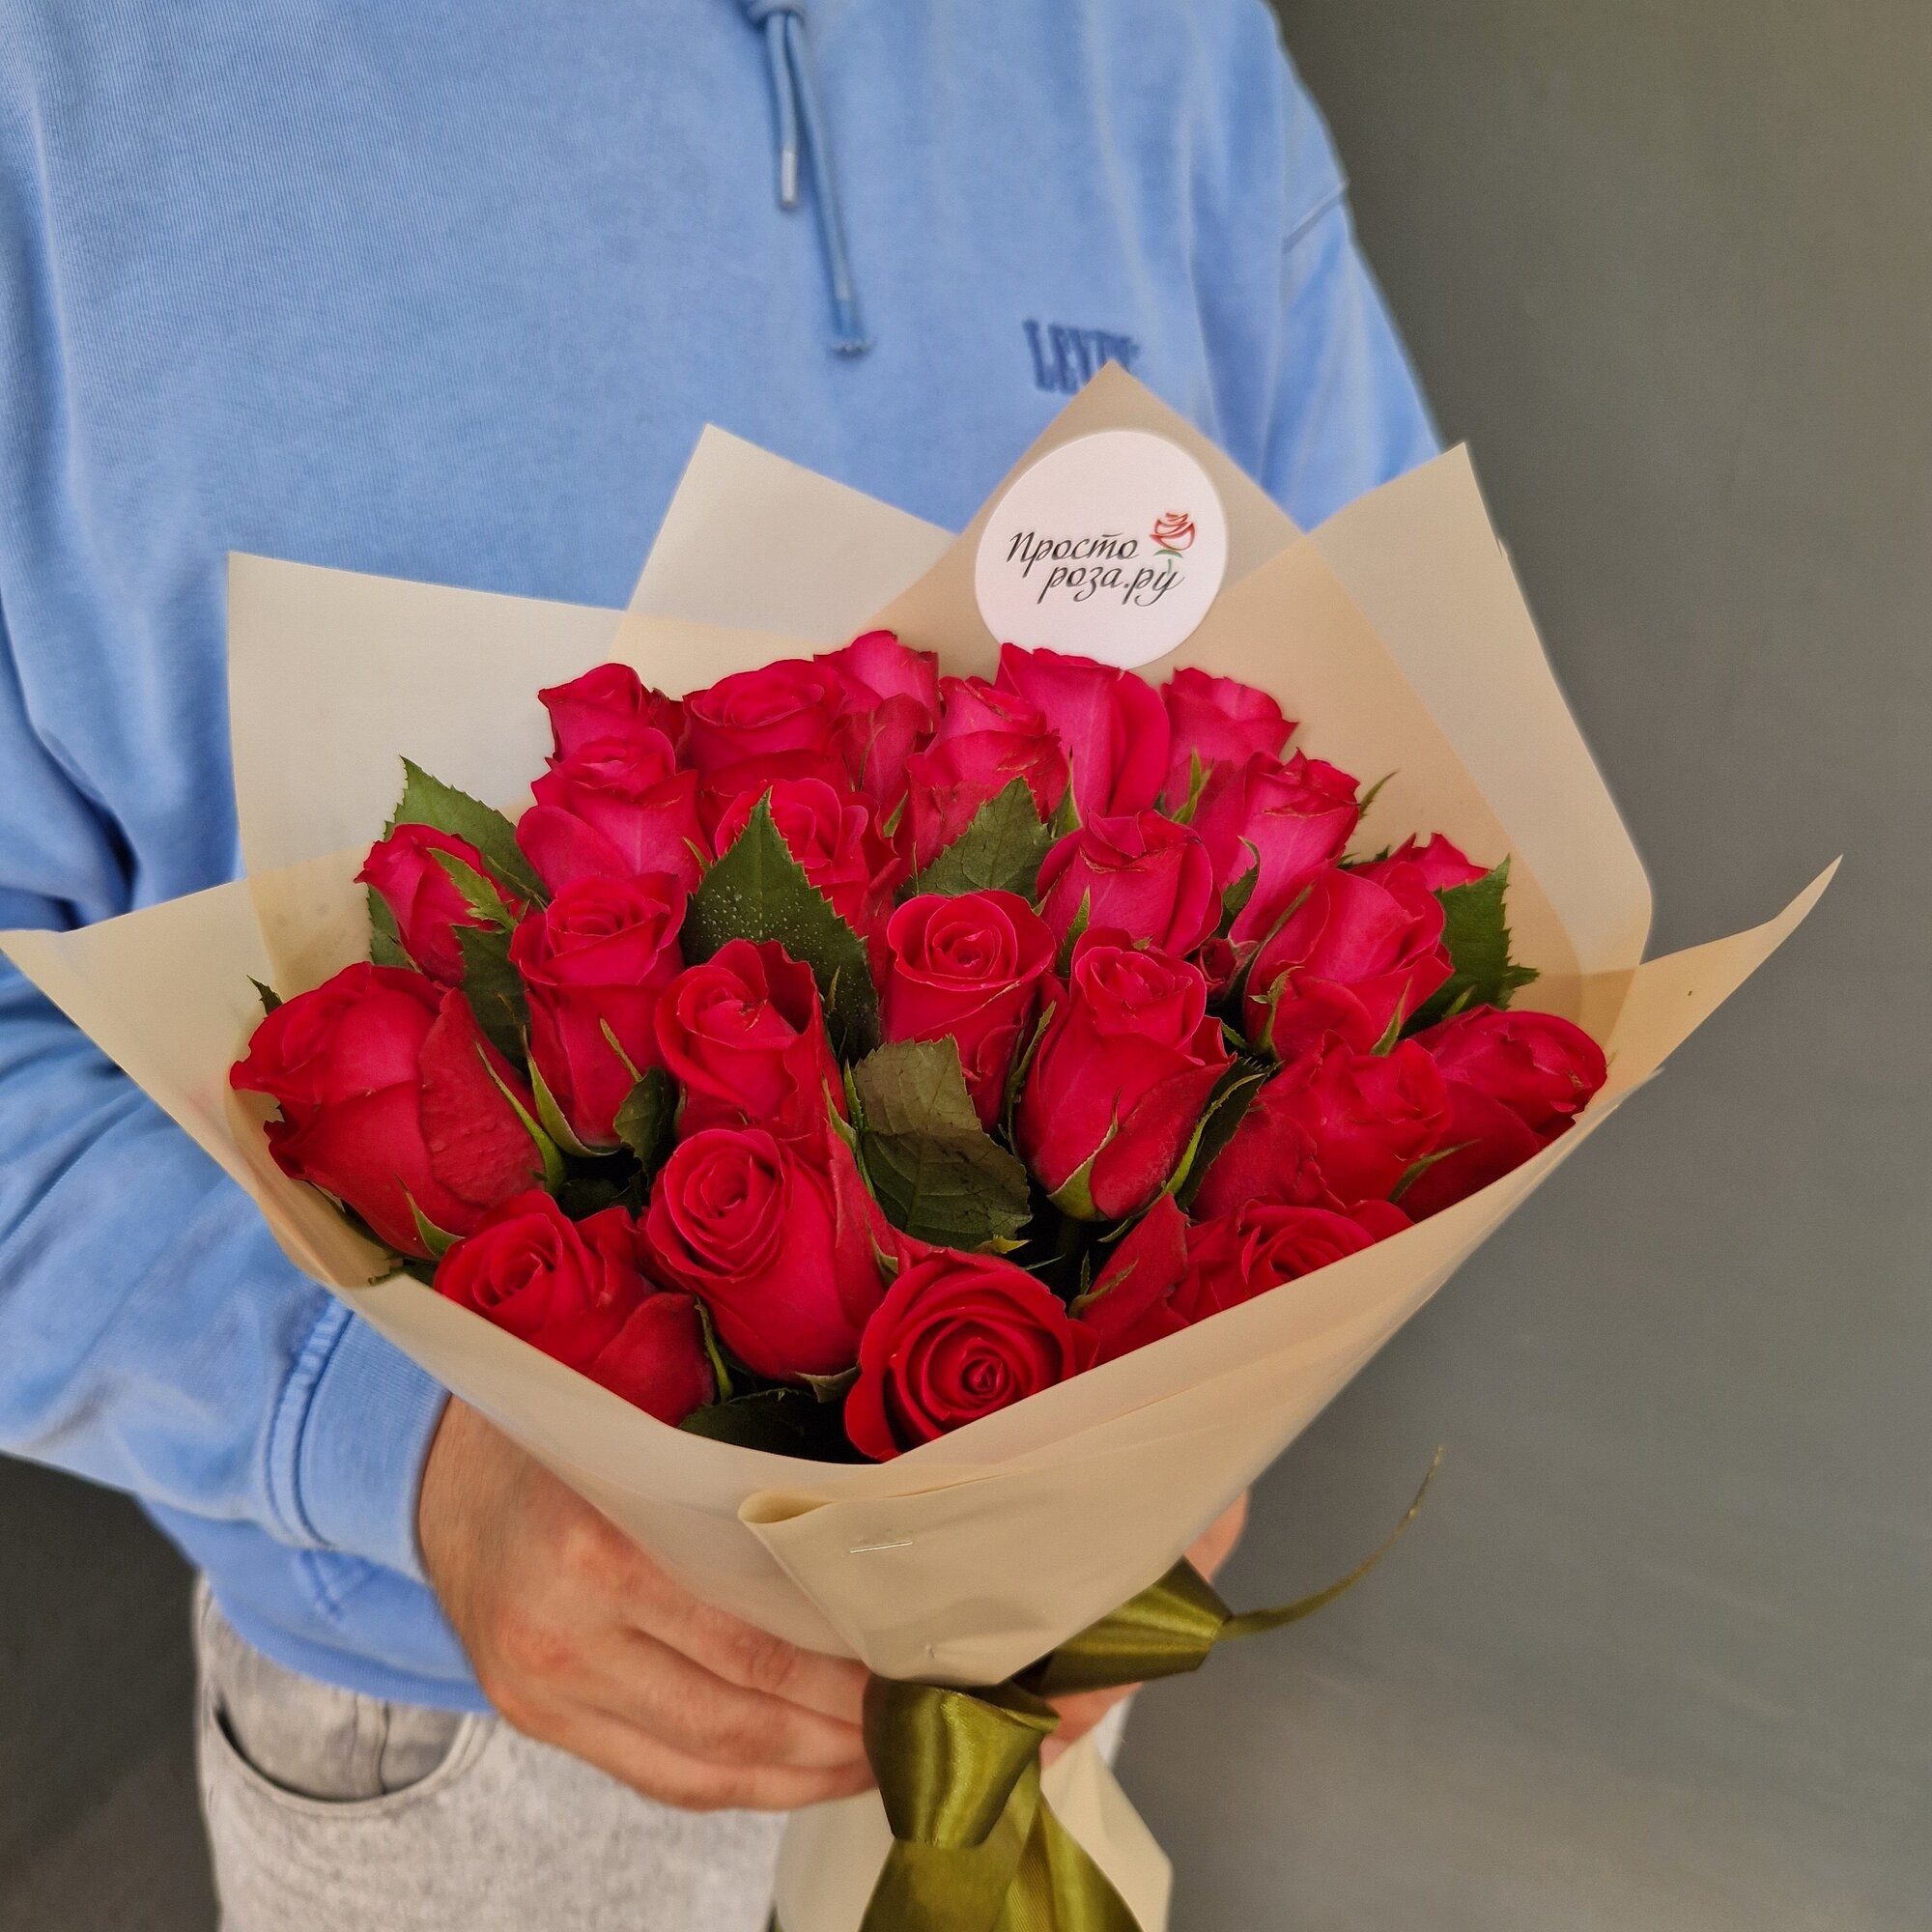 Розы Кения 27 шт красные в кремовой упаковке 37 см (на фото 25 шт)арт.12644